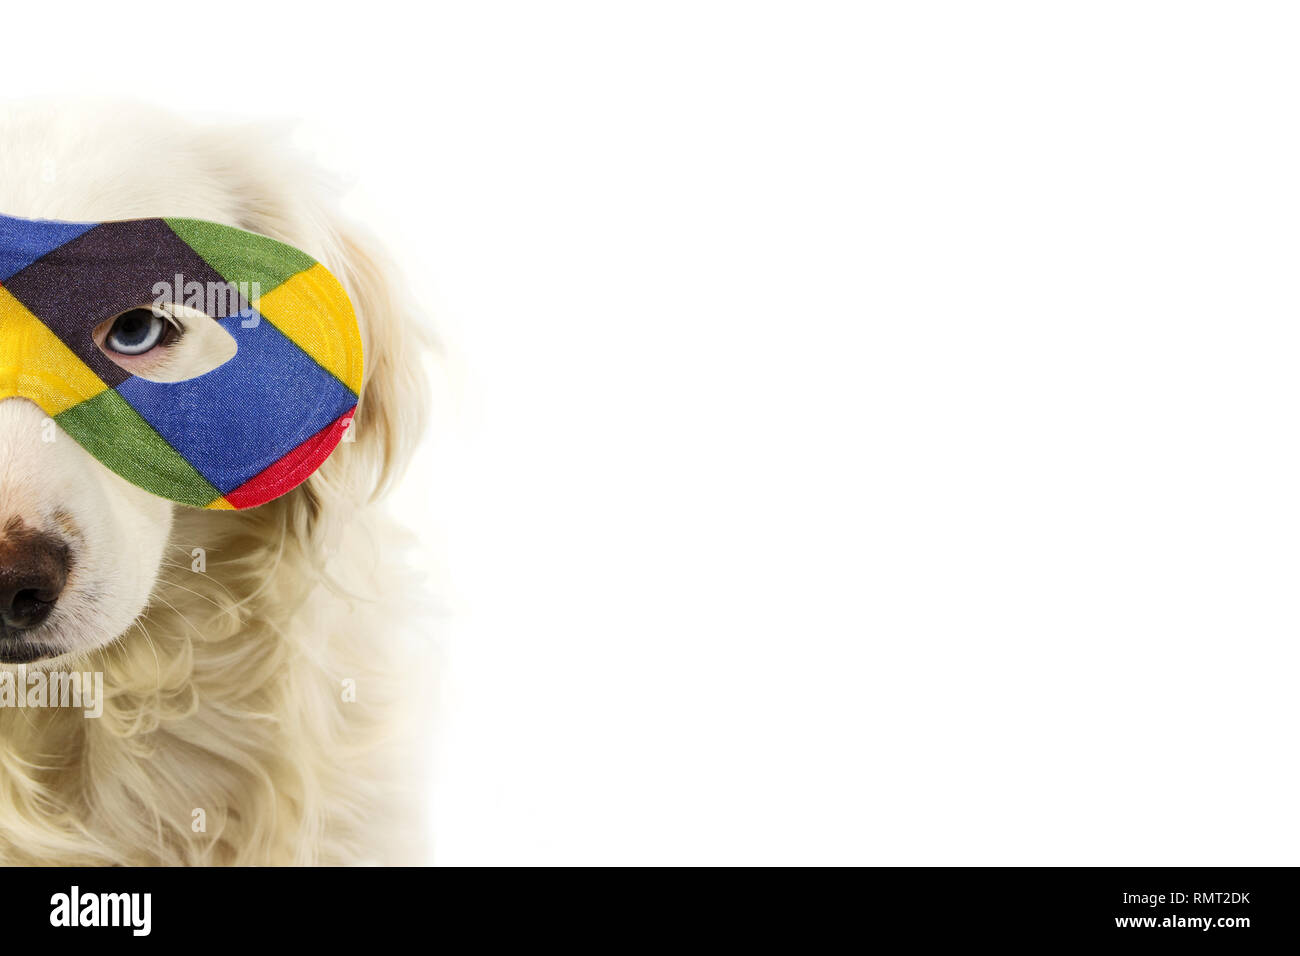 Retrato perro arlequín la máscara de carnaval. Gracioso cachorro de raza mixta luciendo un colorido EYEMASK. Foto de estudio aislado sobre fondo blanco. Foto de stock